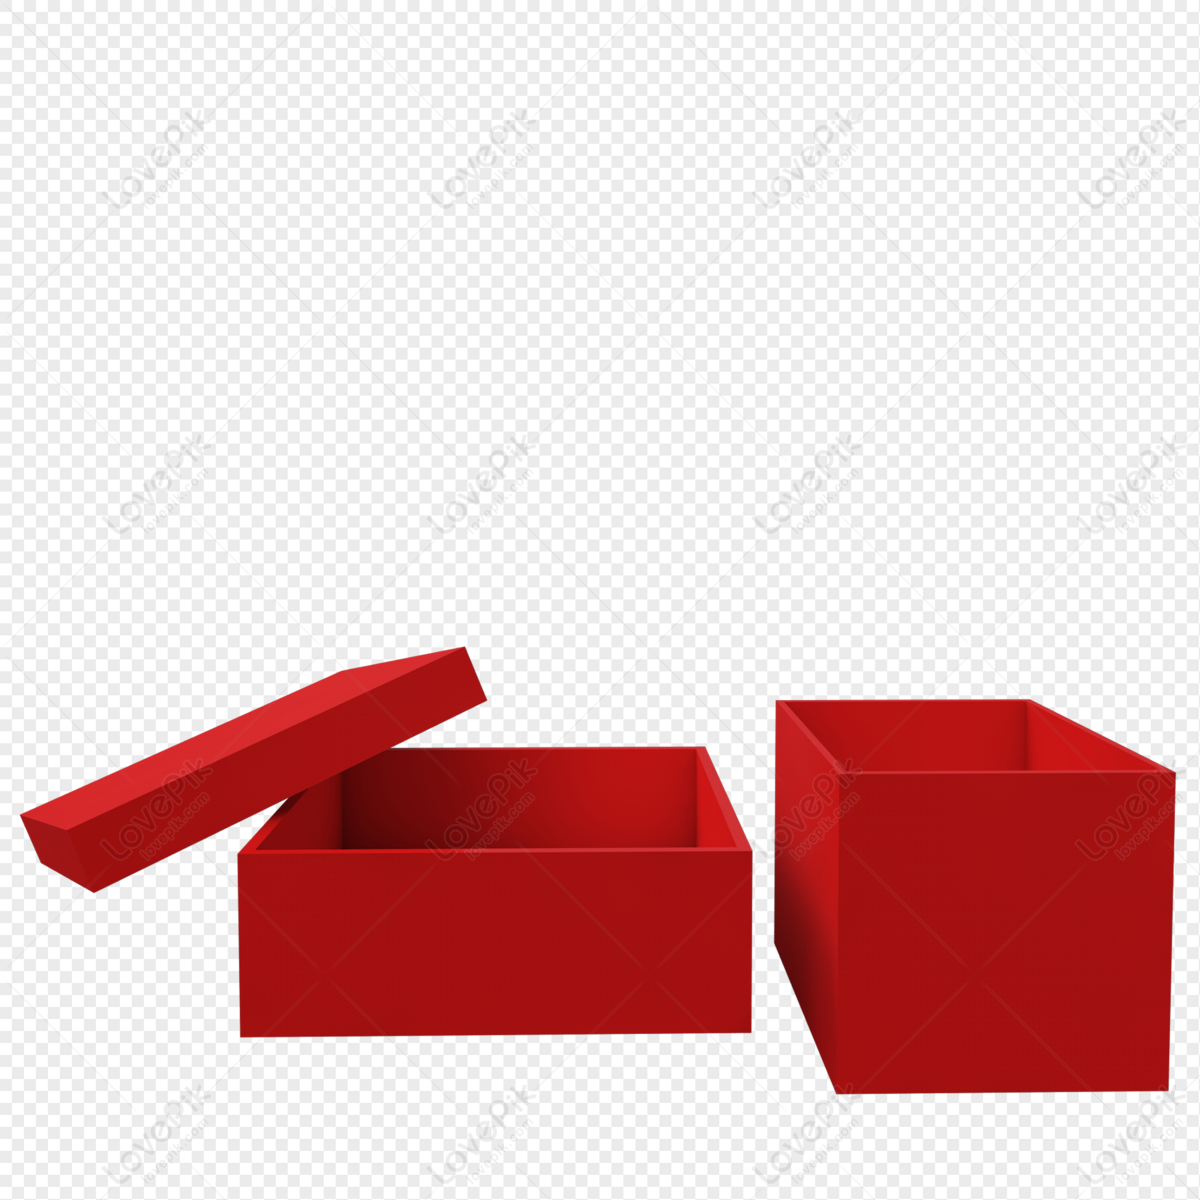 forgænger Uden for Begrænsning Red Square Box PNG Transparent Image And Clipart Image For Free Download -  Lovepik | 401231537